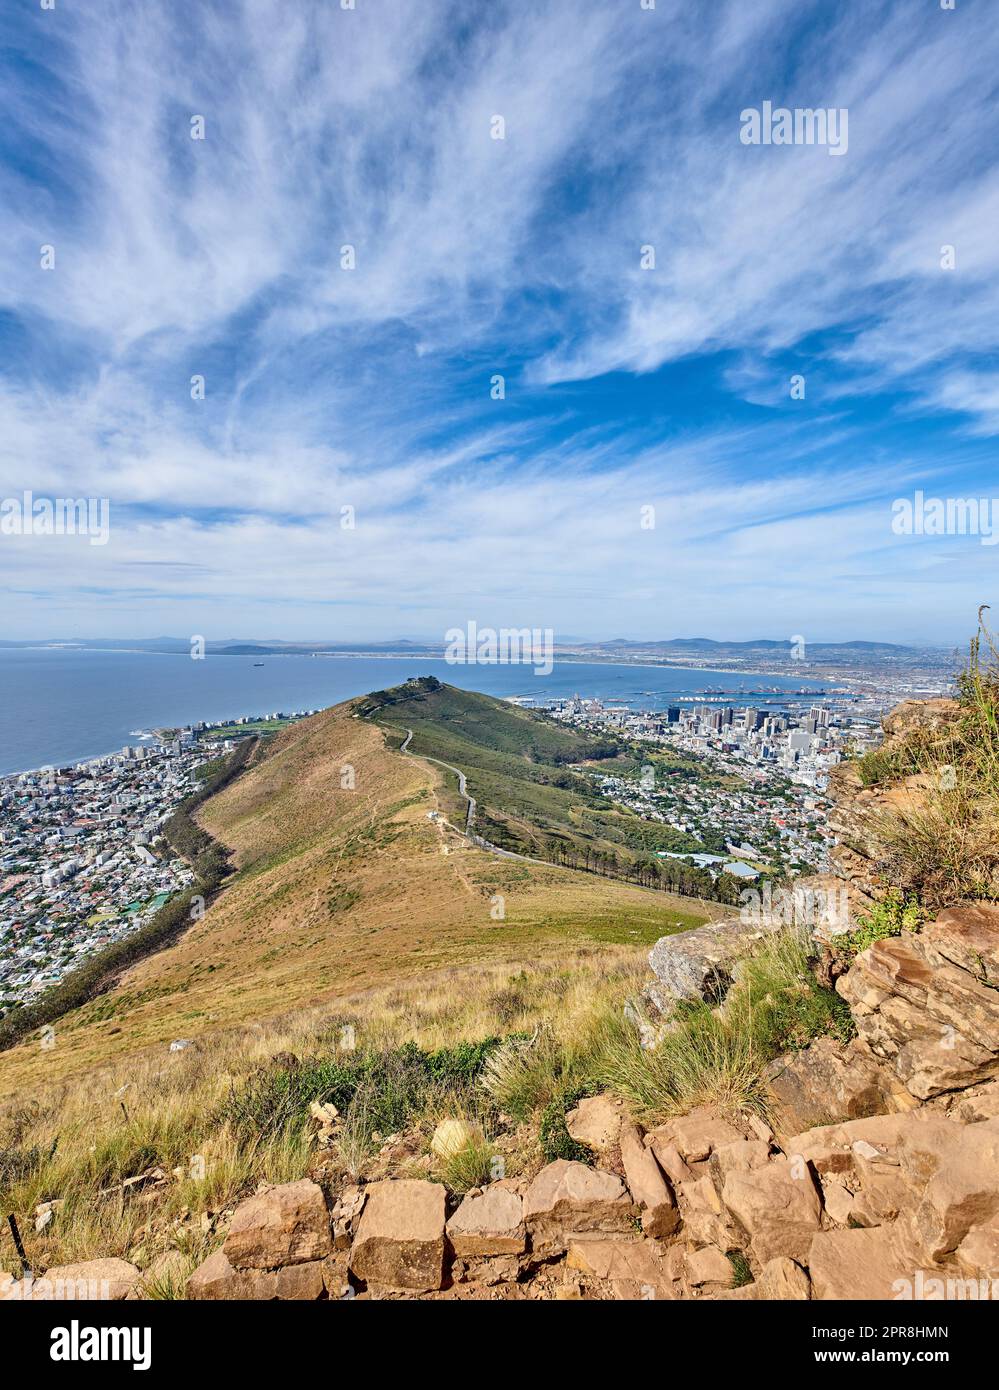 Felsiger Berg mit Blick auf eine Küstenstadt am Meer in Kapstadt. Grüne Hügellandschaft mit Steinen und Pflanzen, umgeben von einer Stadt und dem Meer an einem wolkigen blauen Himmel mit Kopierraum. Stockfoto